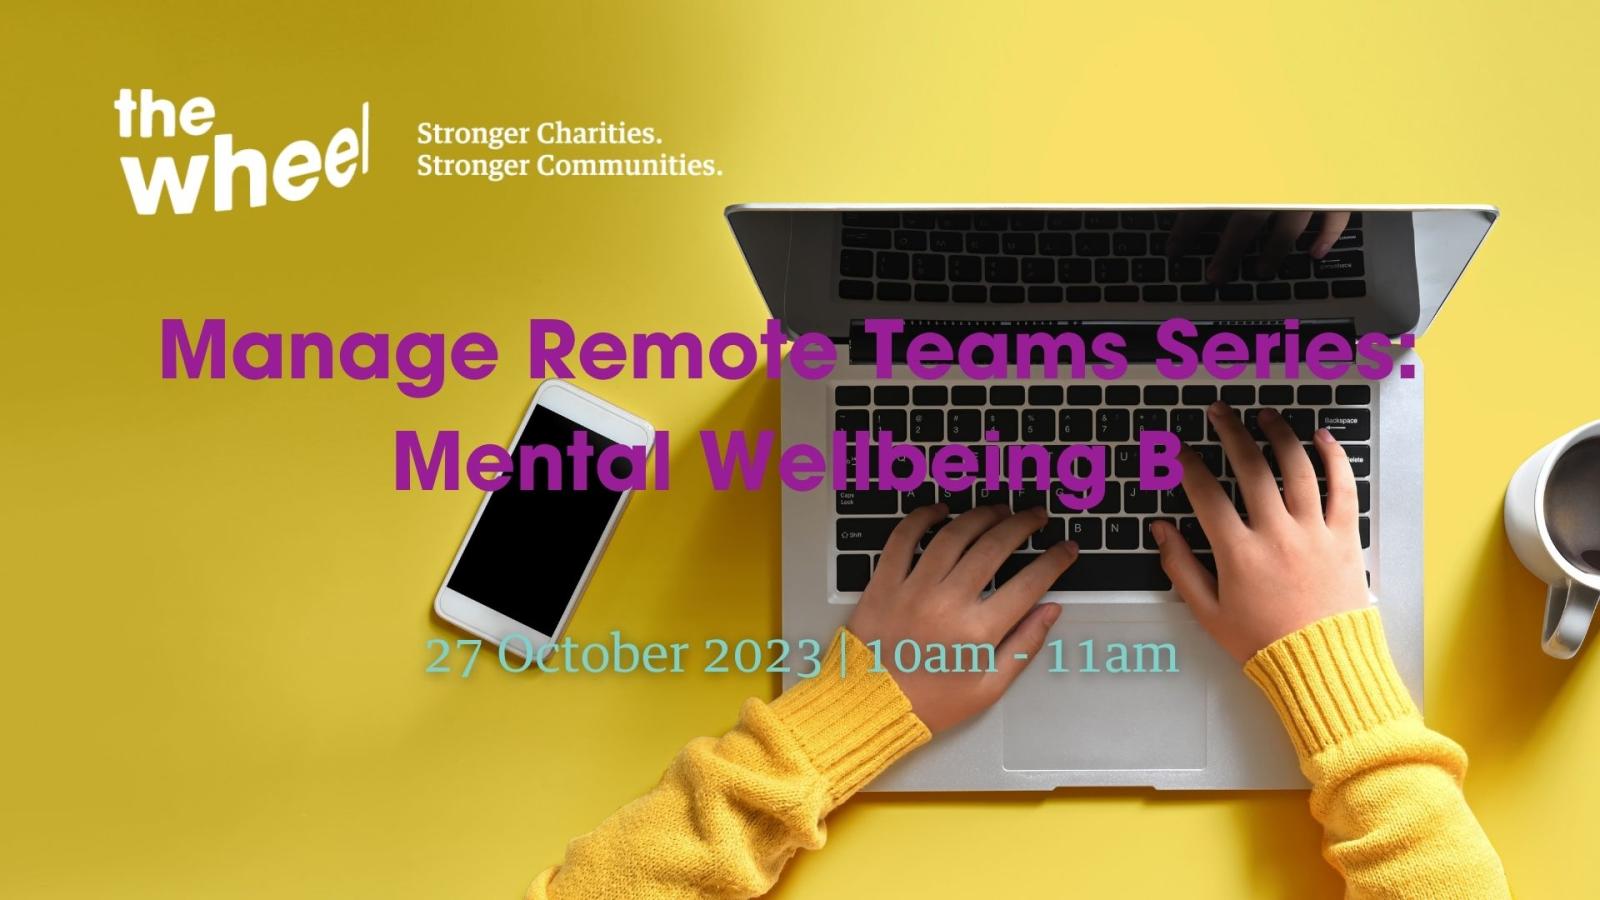 Manage Remote Teams Series: Mental Wellbeing B (27 October 2023)